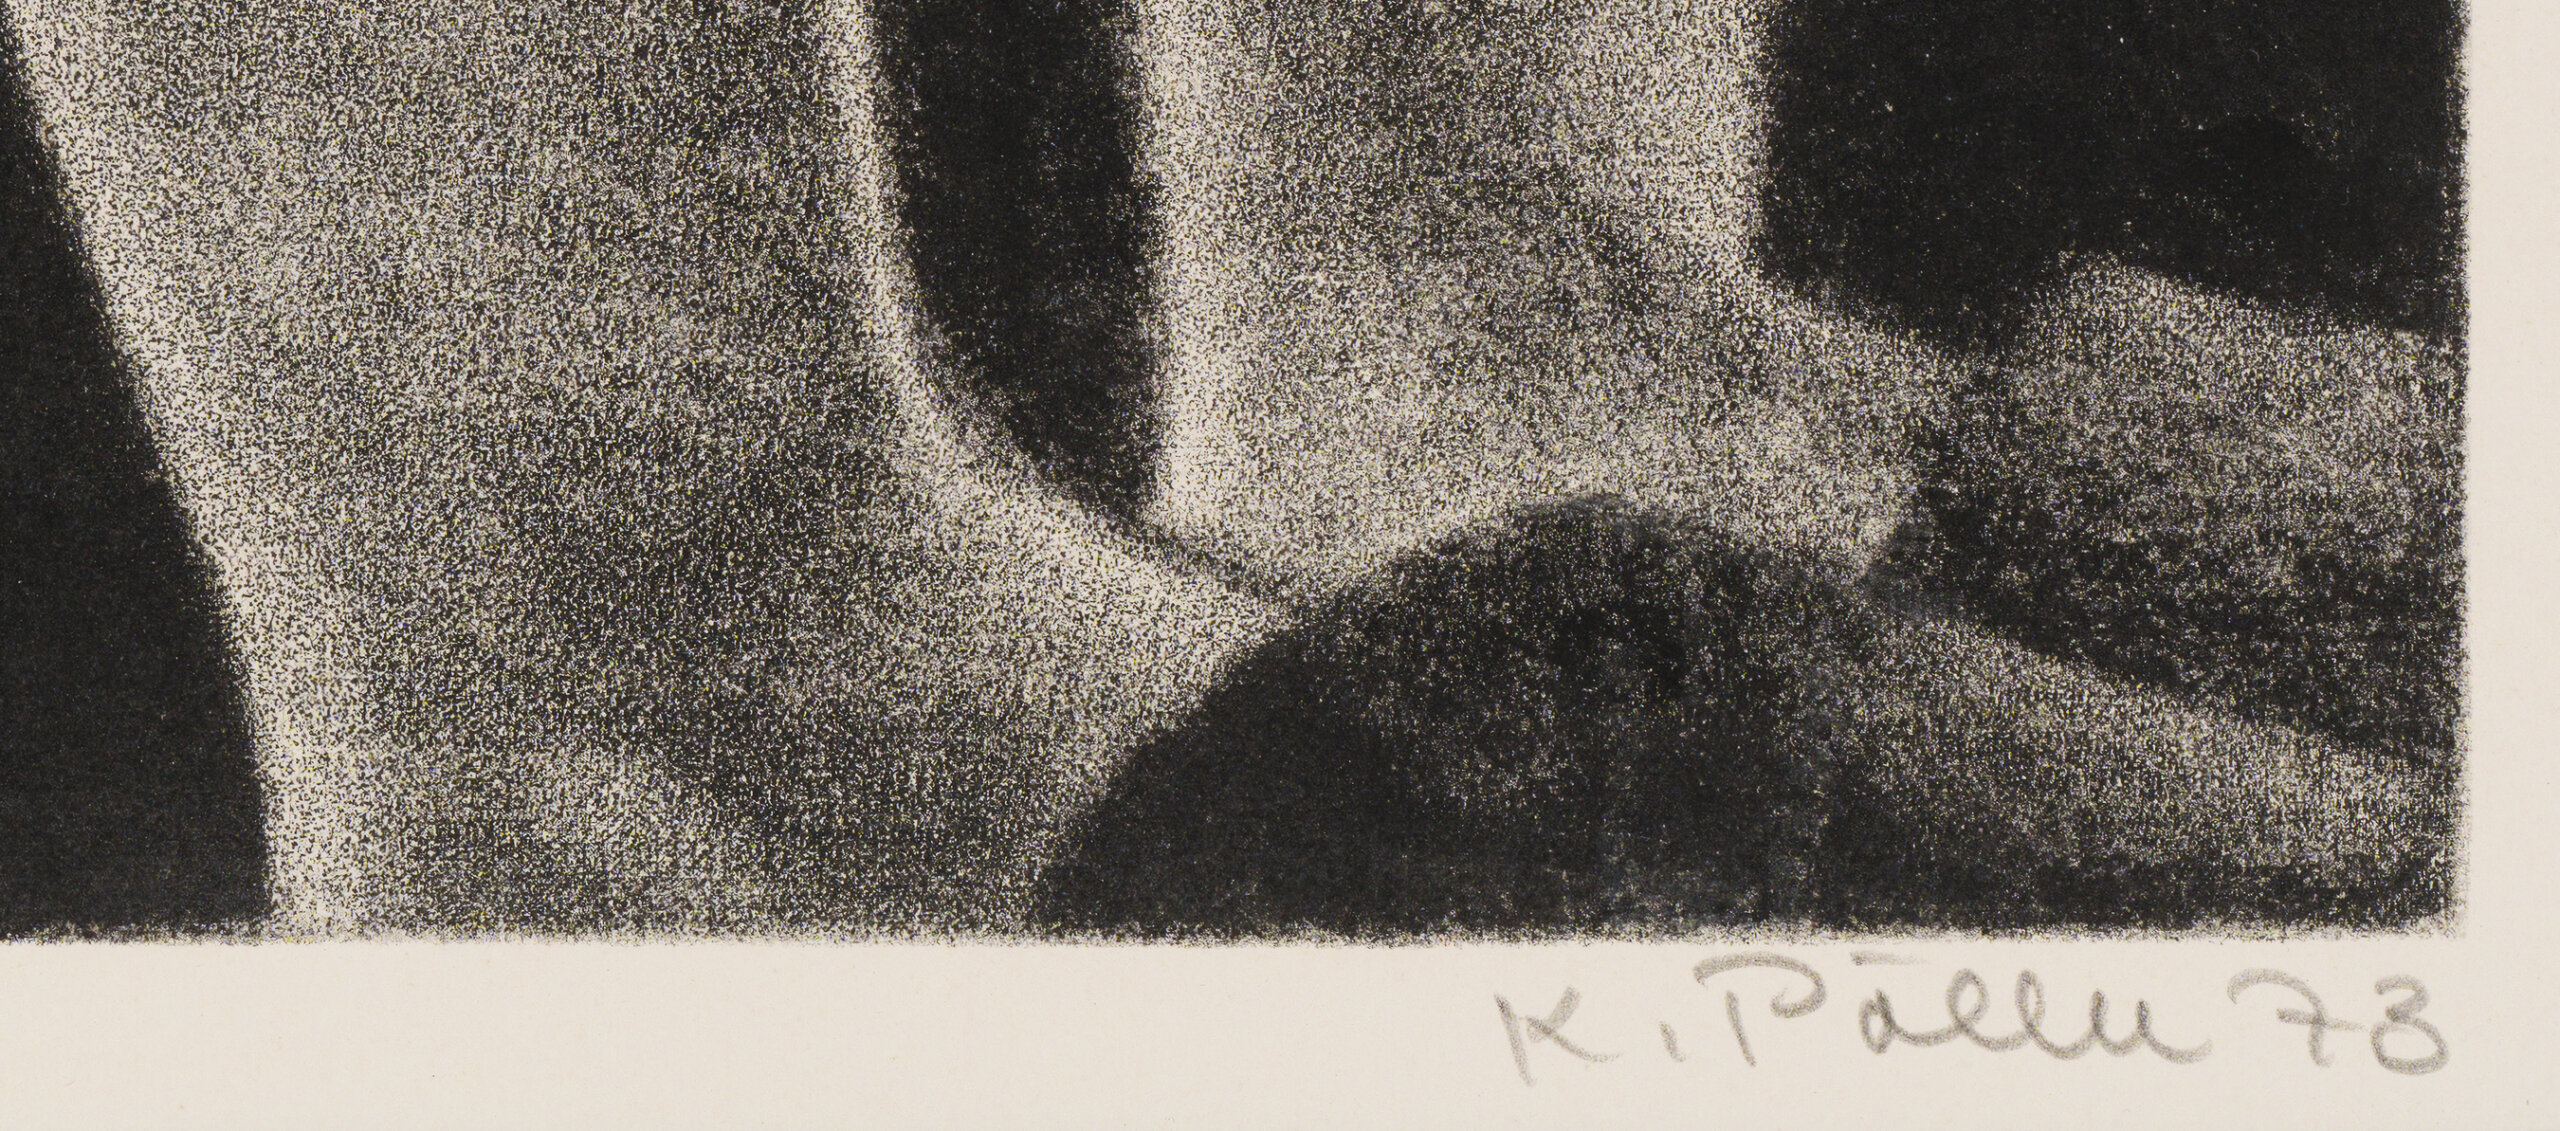 Kaljo Põllu “Uni”, 1973. Plm 30,5 x 43,5 cm.